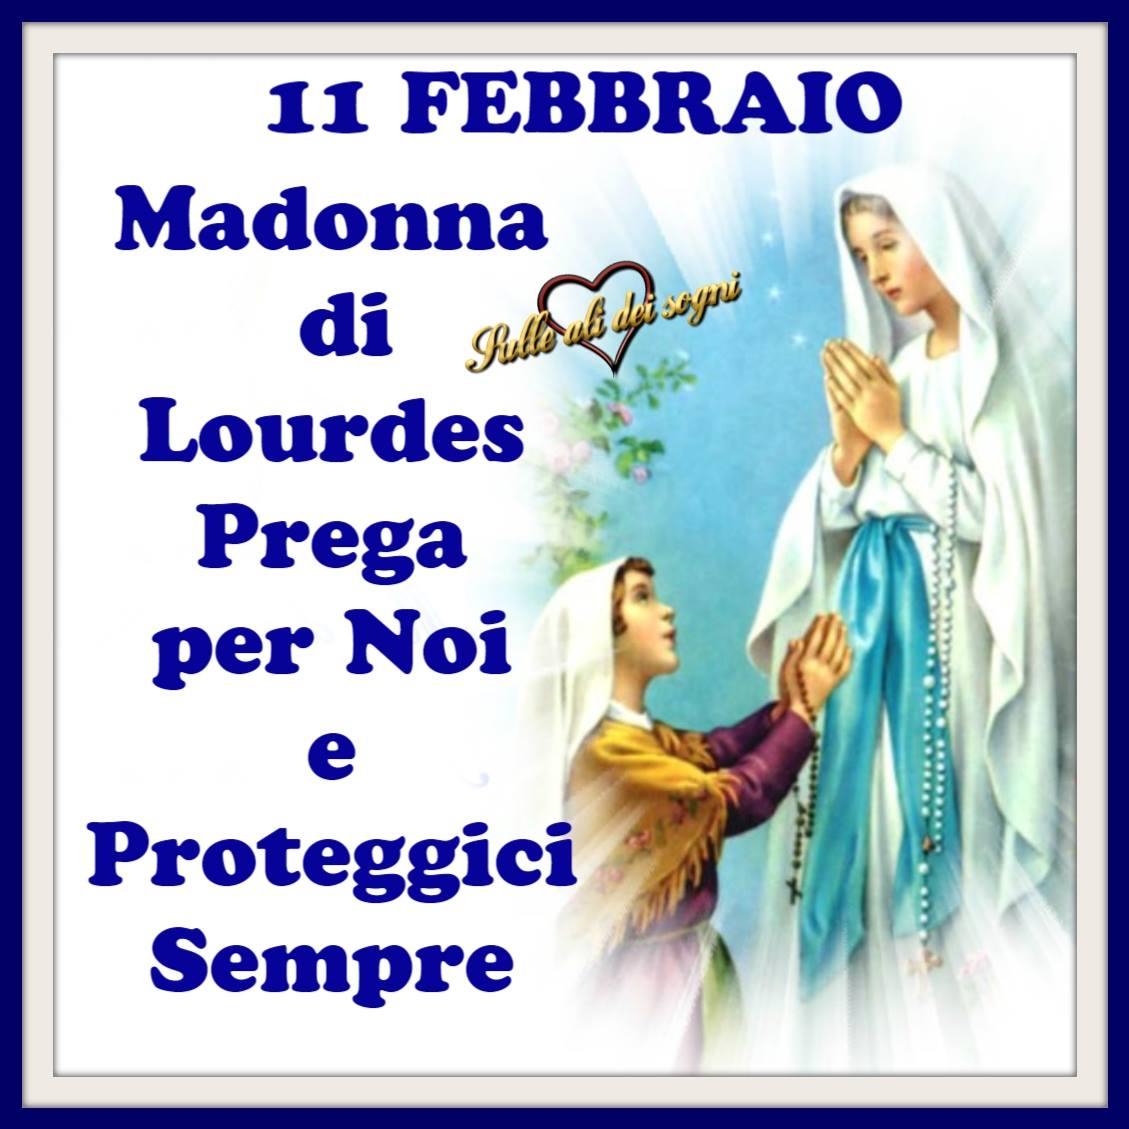 Madonna di Lourdes immagini bellissime